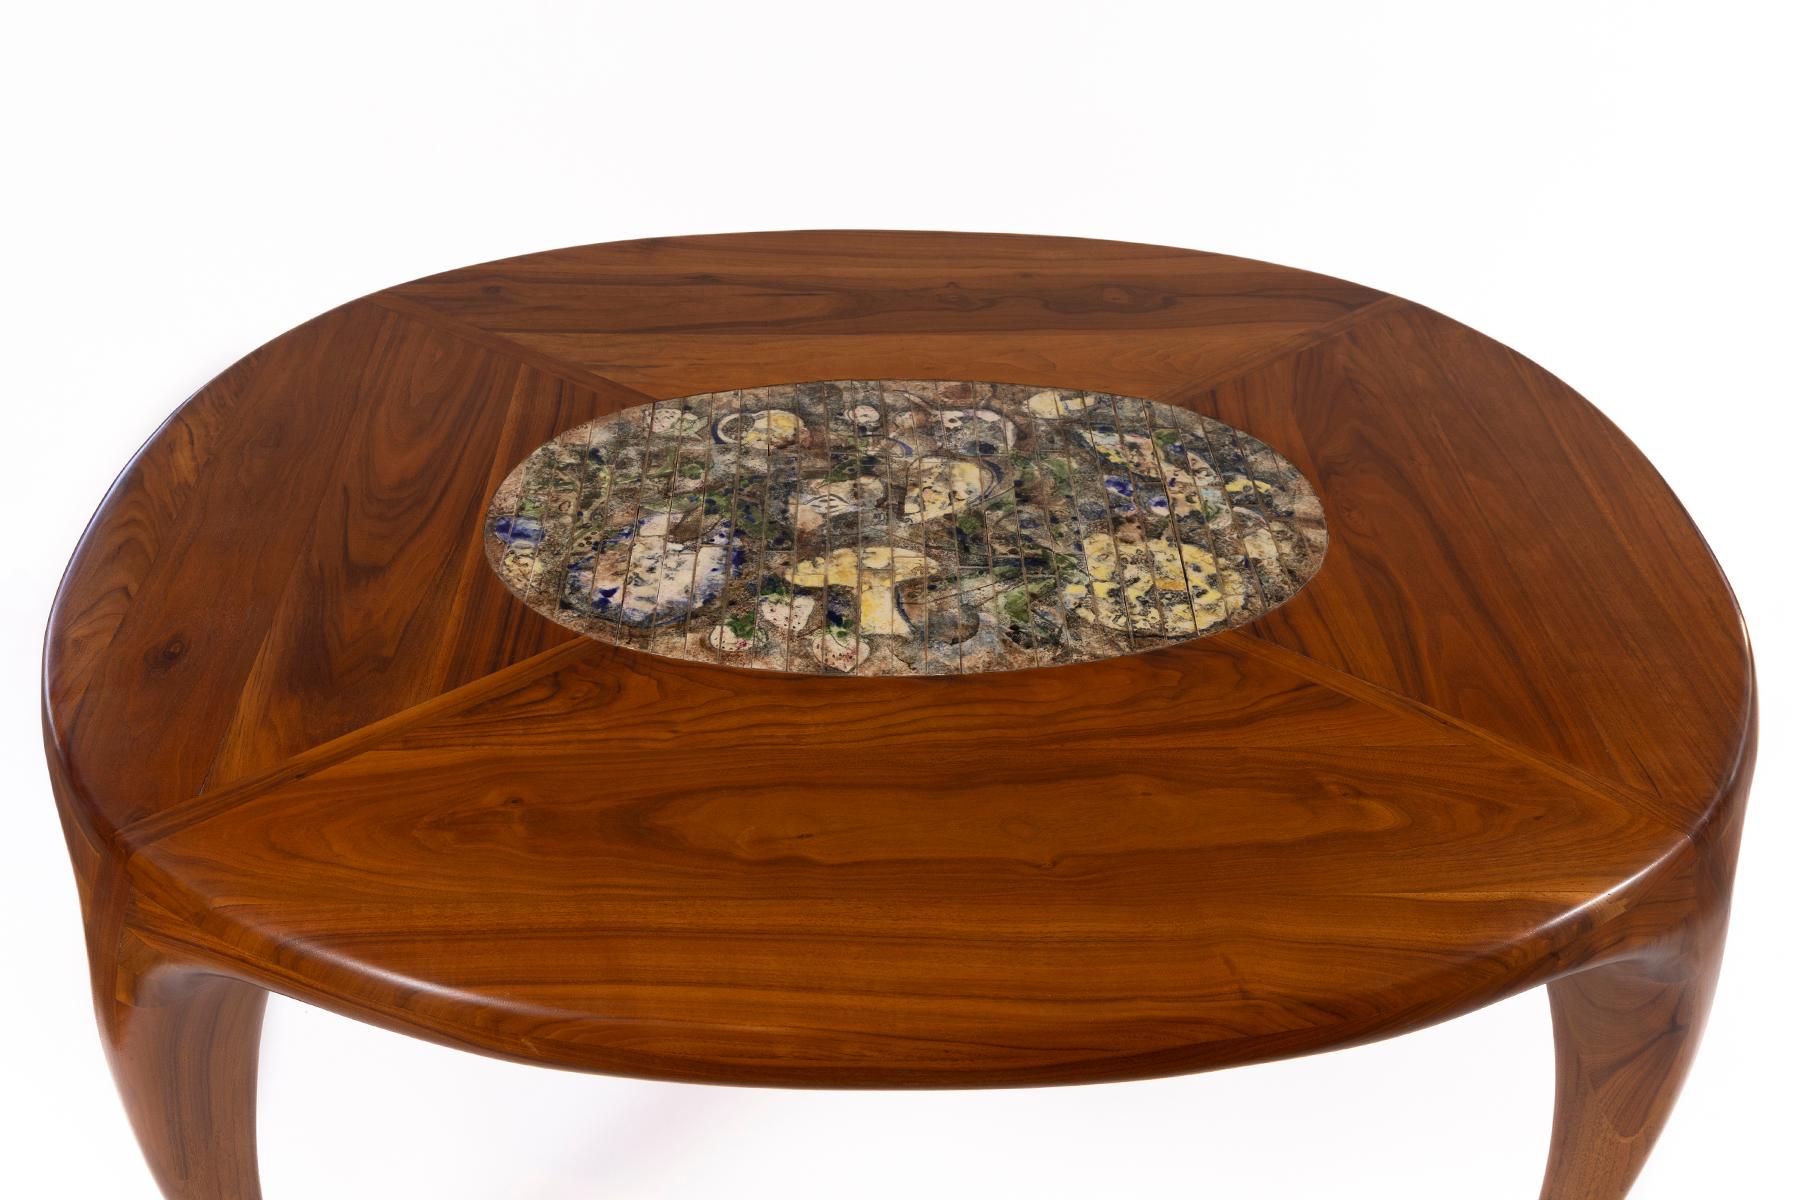 Skulpturaler Esstisch von Allen Ditson und Lee Porzio aus massivem Nussbaumholz mit einem ovalen Einsatz aus Porzios charakteristischen Keramikfliesen. Dieses einmalige Exemplar stammt aus dem Jahr 1971 und wurde tadellos restauriert.